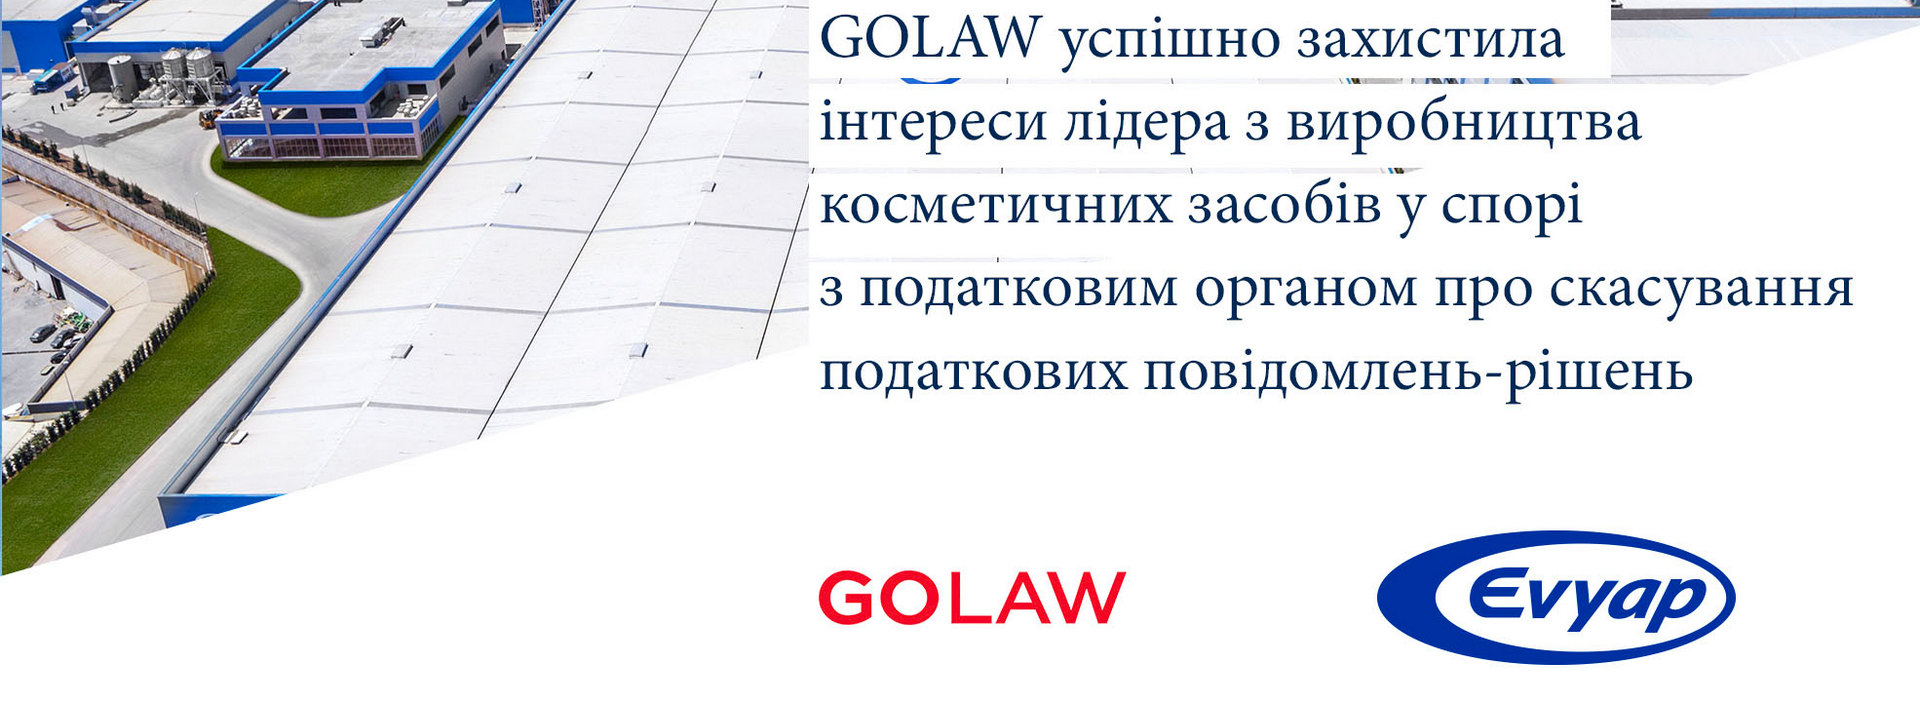 GOLAW успішно захистила інтереси компанії Evyap Trading Ukraine у податковому спорі